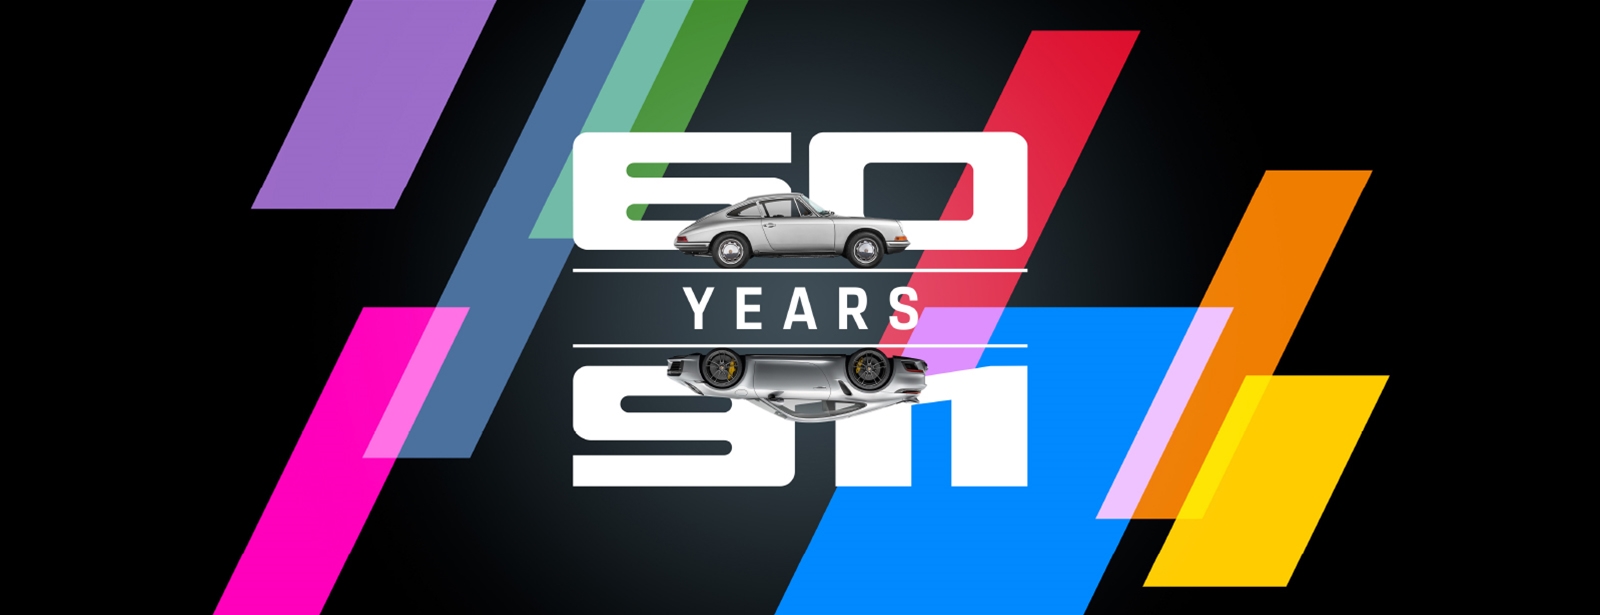 60 Years of Porsche 911 Exposition 